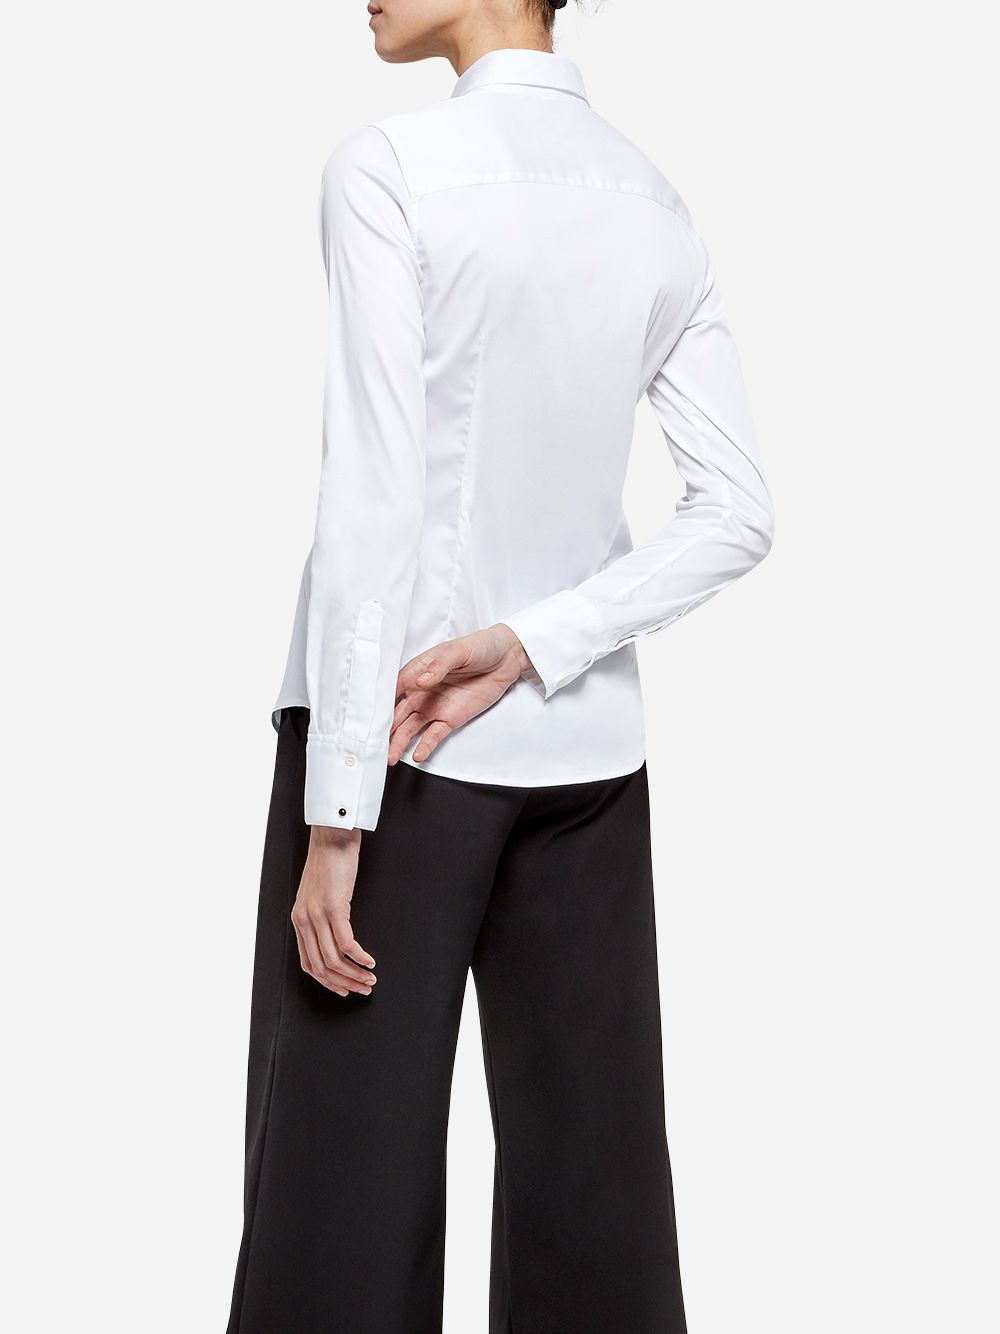 Camisa Branca Essencial 01 | A-line Clothing